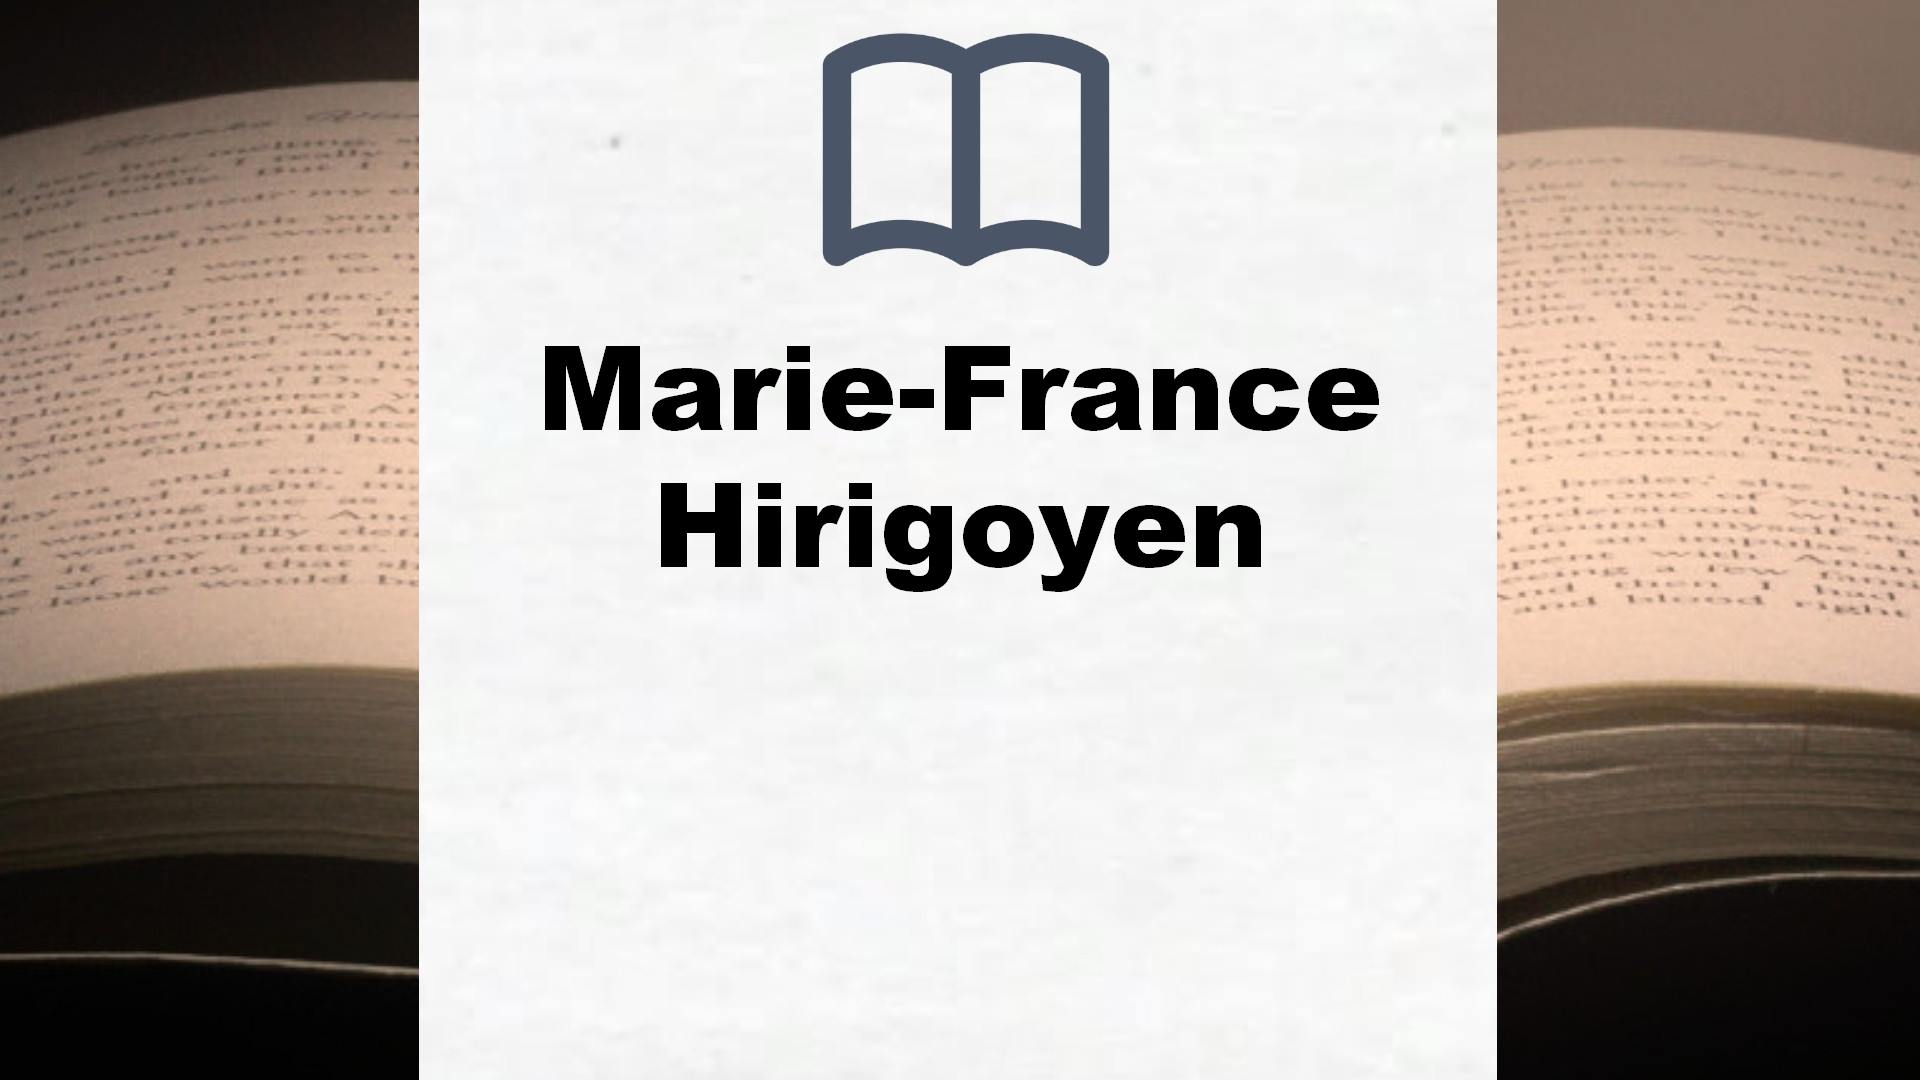 Libros Marie-France Hirigoyen